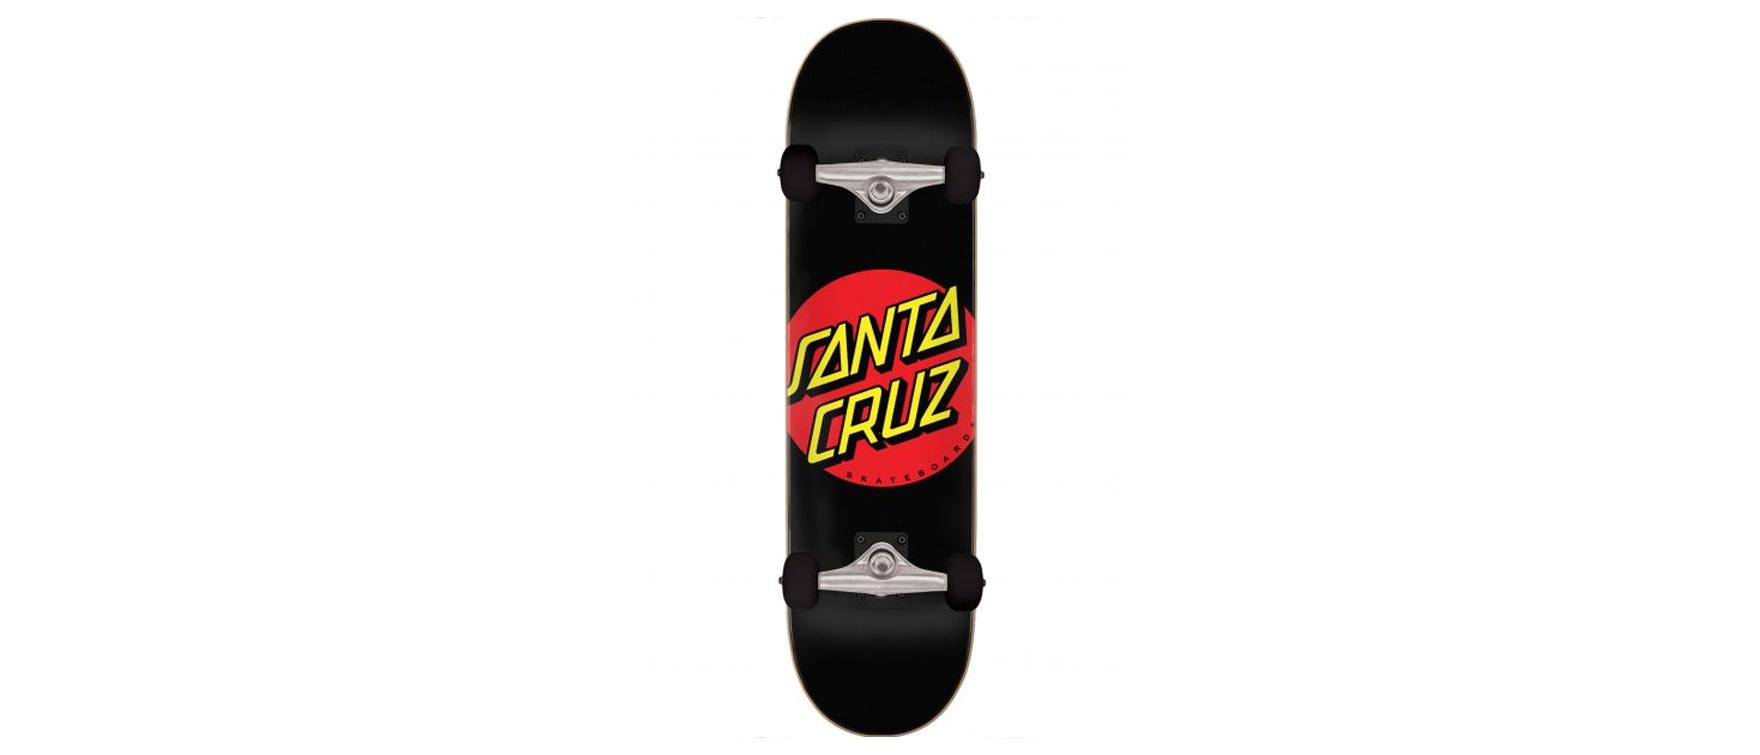 11. Santa Cruz Skateboards